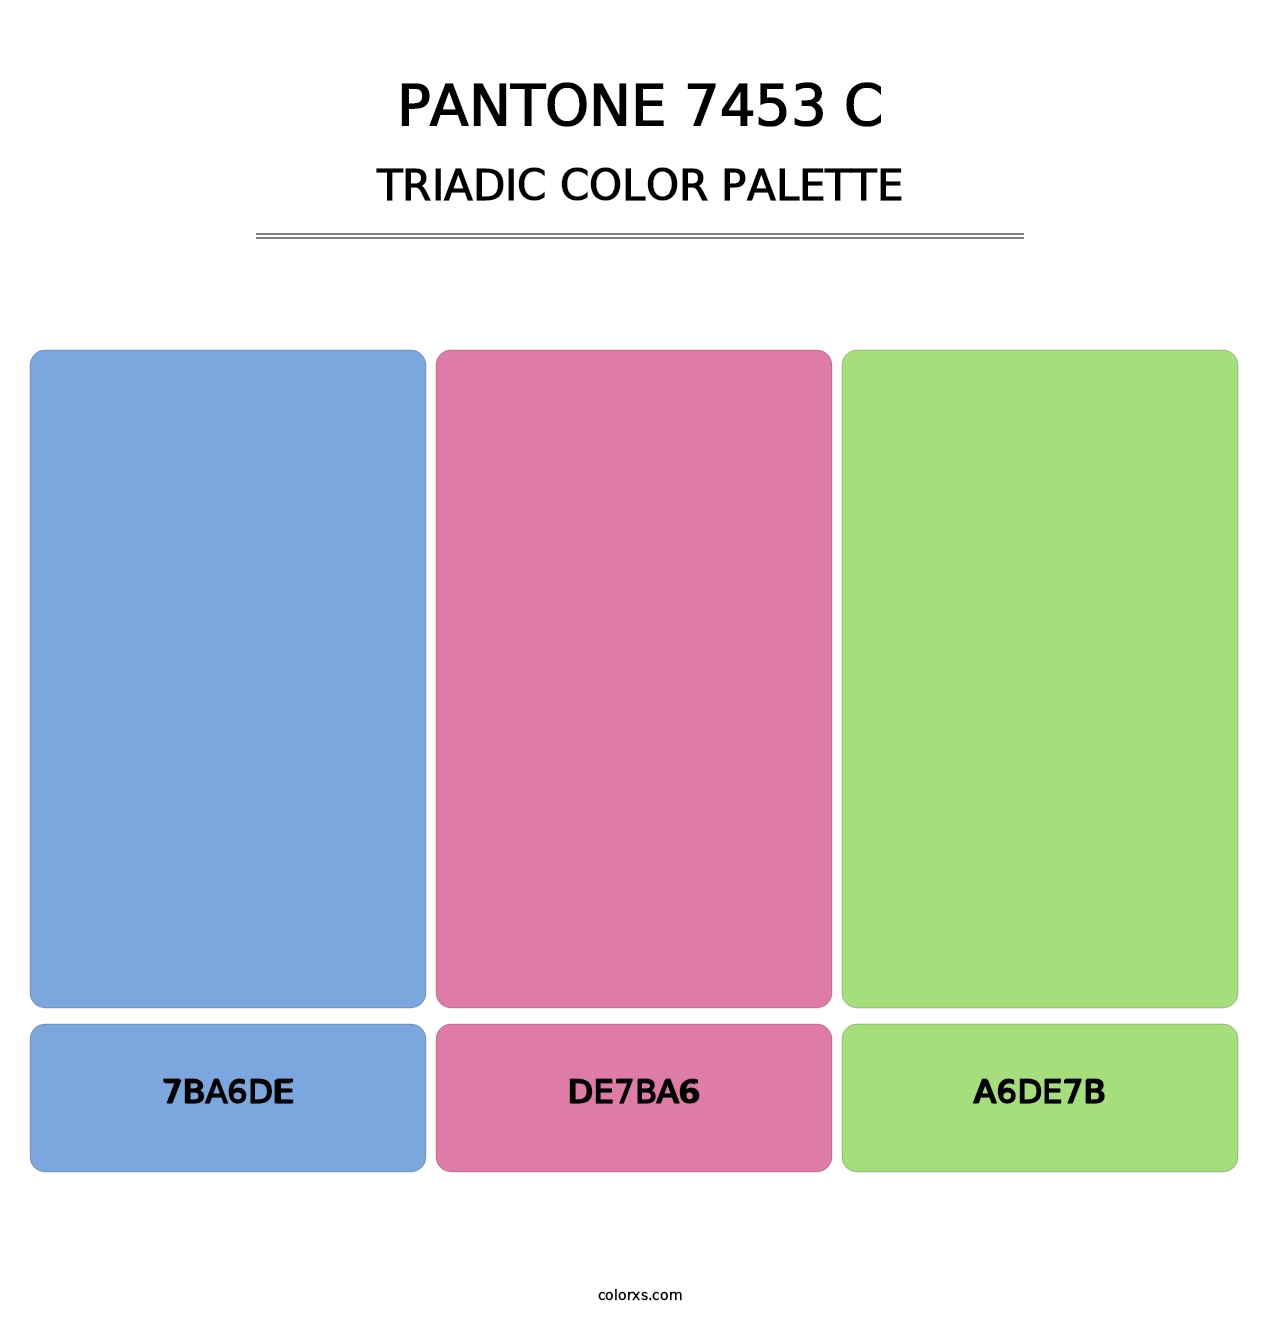 PANTONE 7453 C - Triadic Color Palette